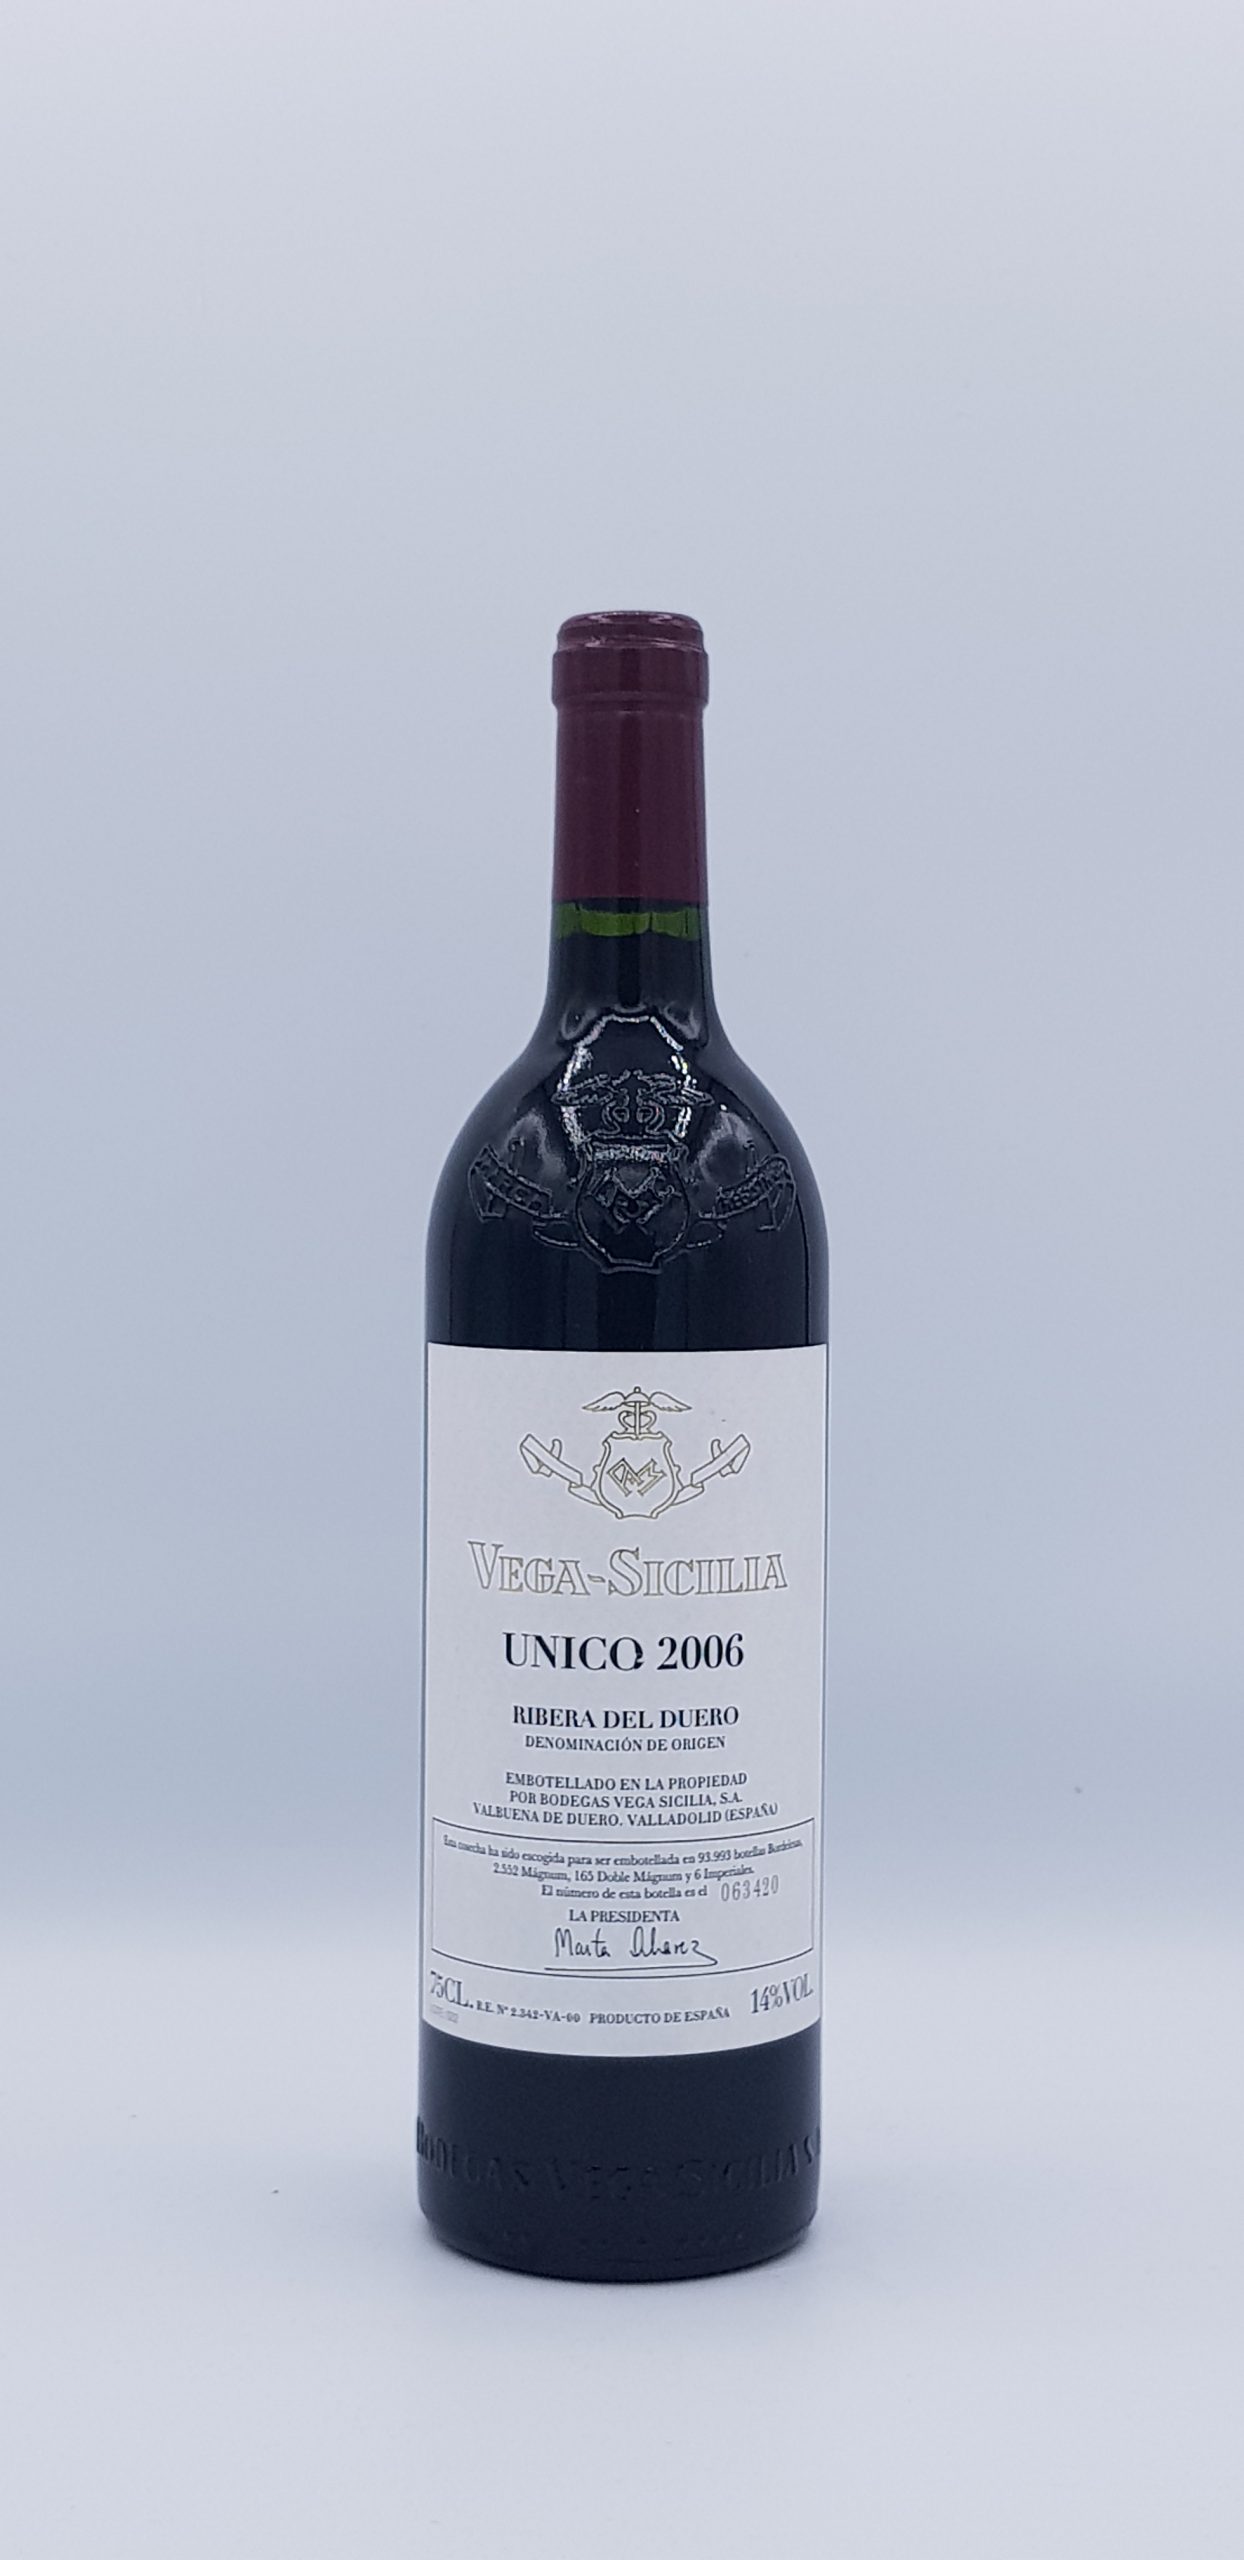 Unico 2006